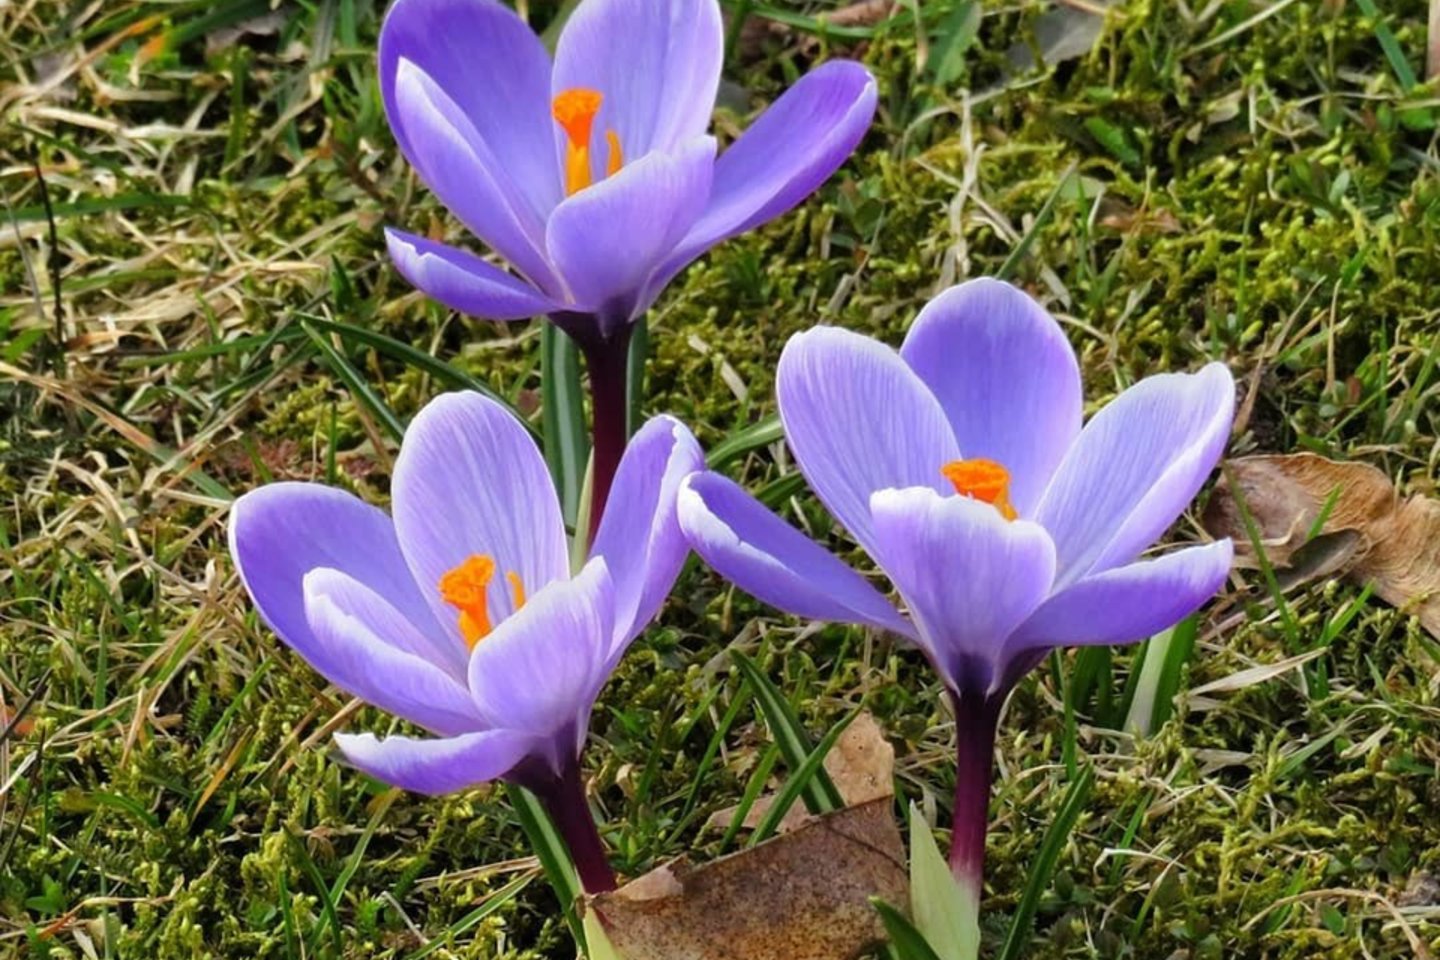 Daugelio rūšių krokai auginami kaip dekoratyviniai, anksti pavasarį žydintys augalai.<br> H. Bask/„Klaipėda, aš su tavim“ nuotr.